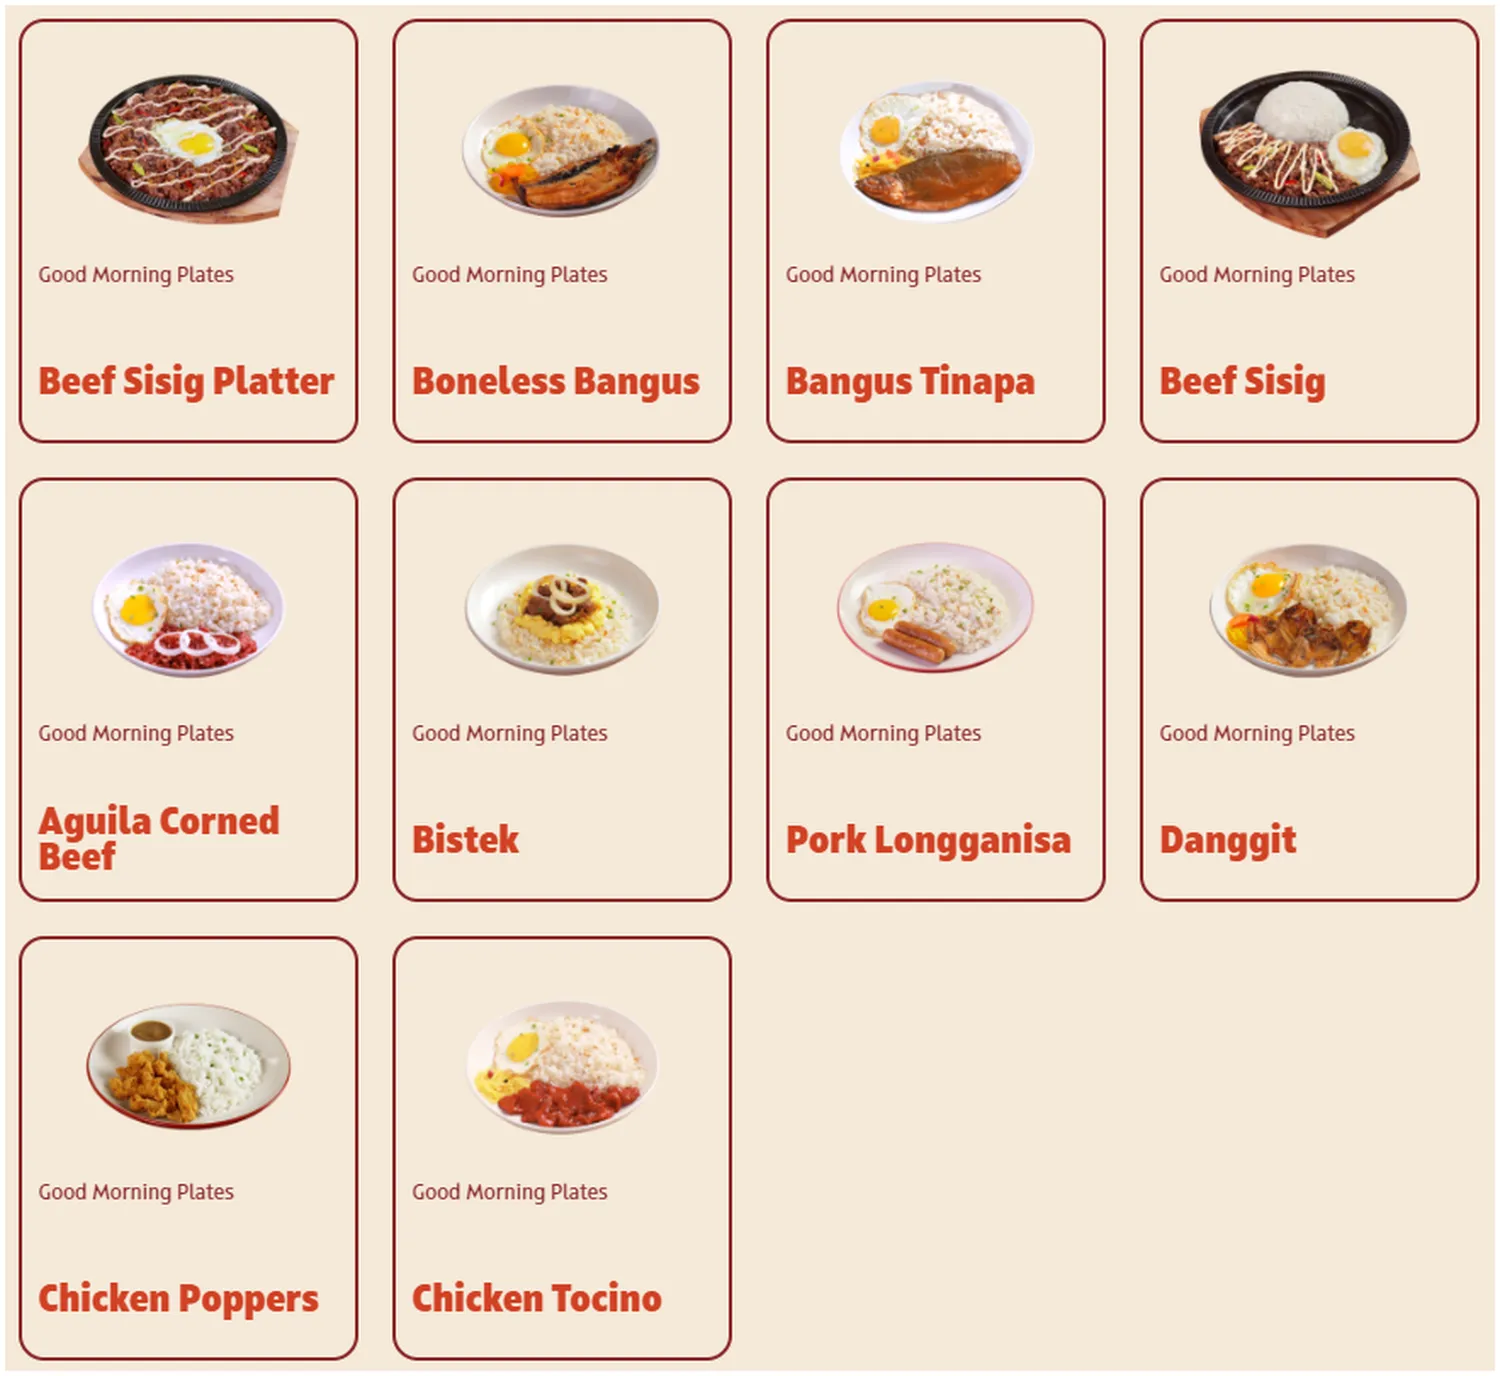 tapa king menu philippine good morning plates